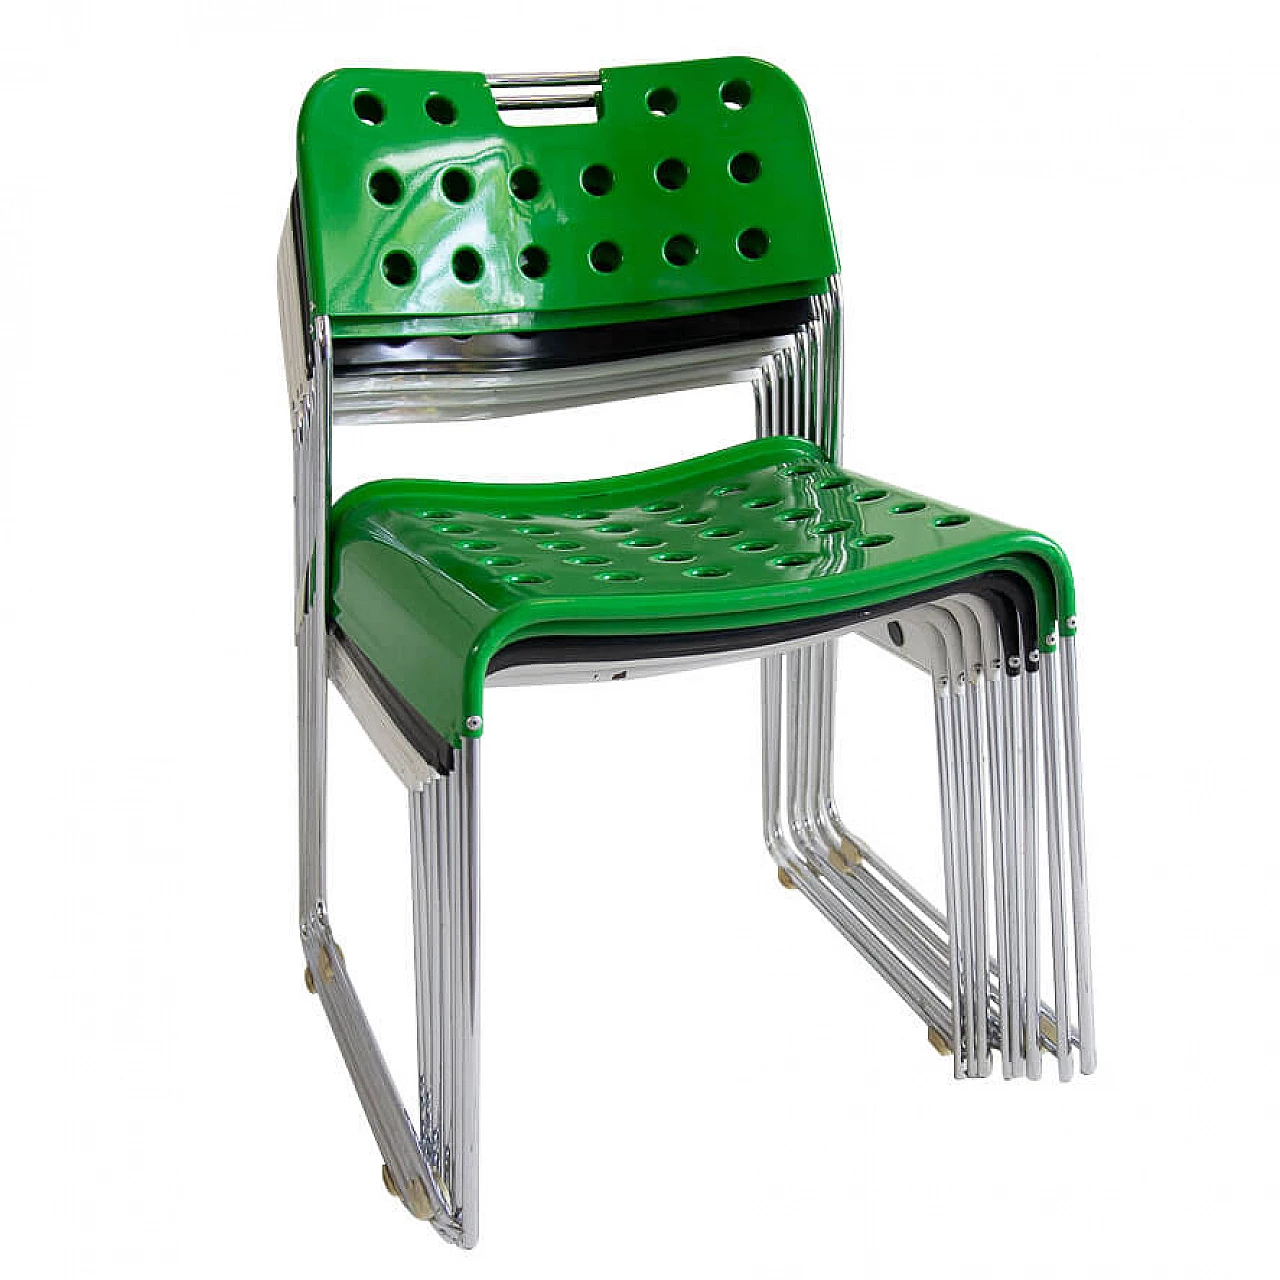 8 Omkstak chairs by Rodney Kinsman for Bieffeplast, '70s 1283750